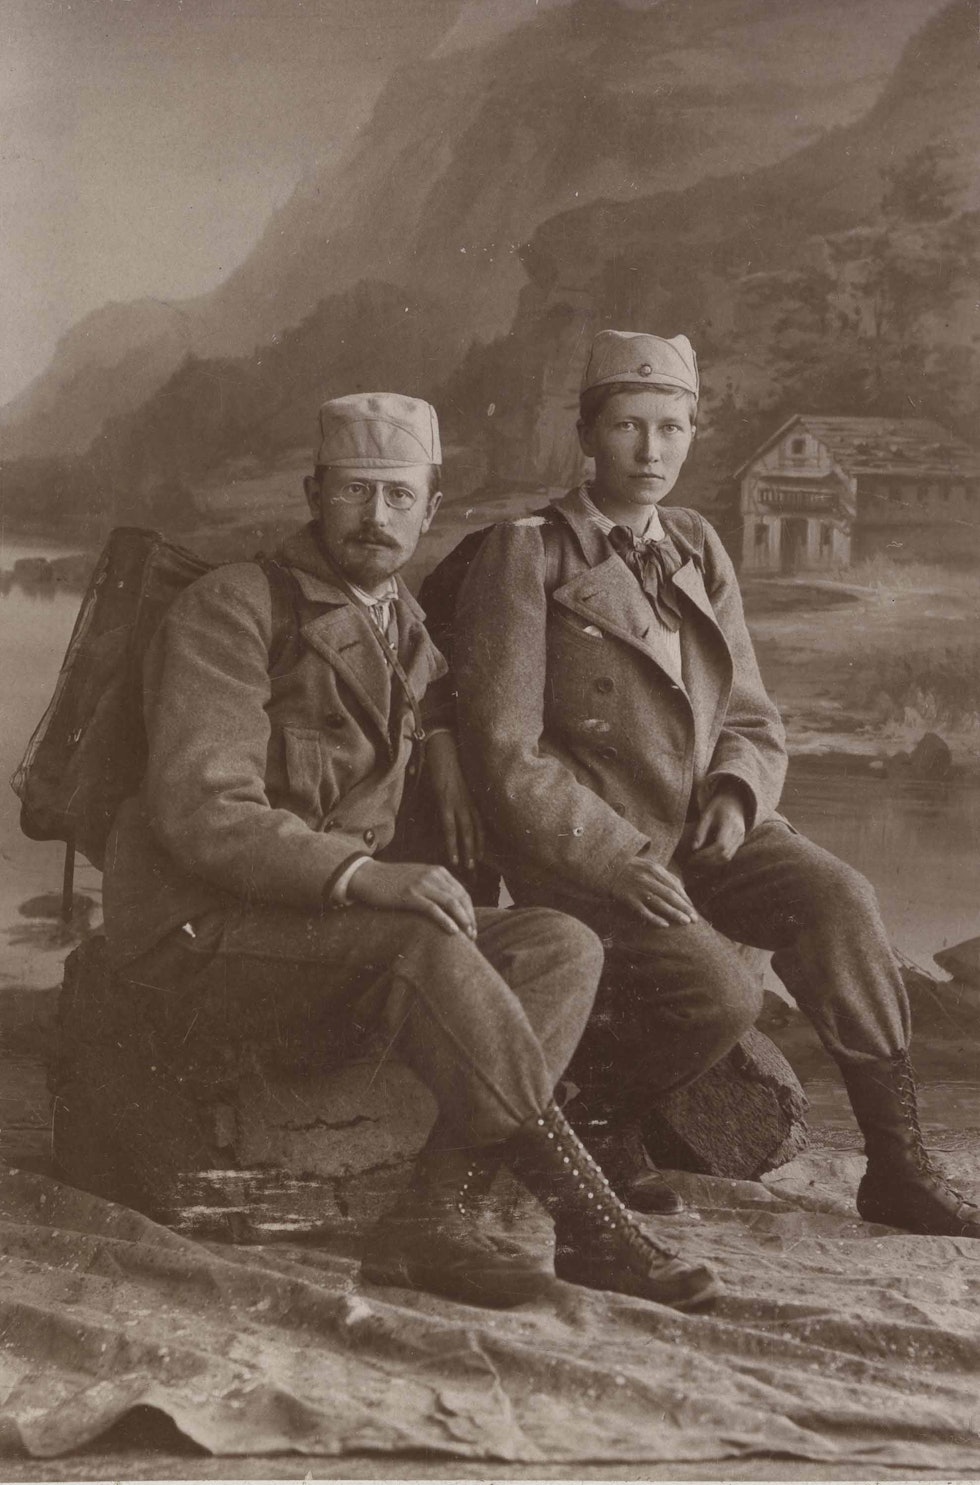 Thekla Resvoll med sin kommende ektemann etter en fjelltur i 1896. Dette er det første kjente fotografiet av en norsk kvinne i bukser uten skjørt over. Fotograf: Marie Roseland. Tilhører MUV, Universitetet i Oslo. 